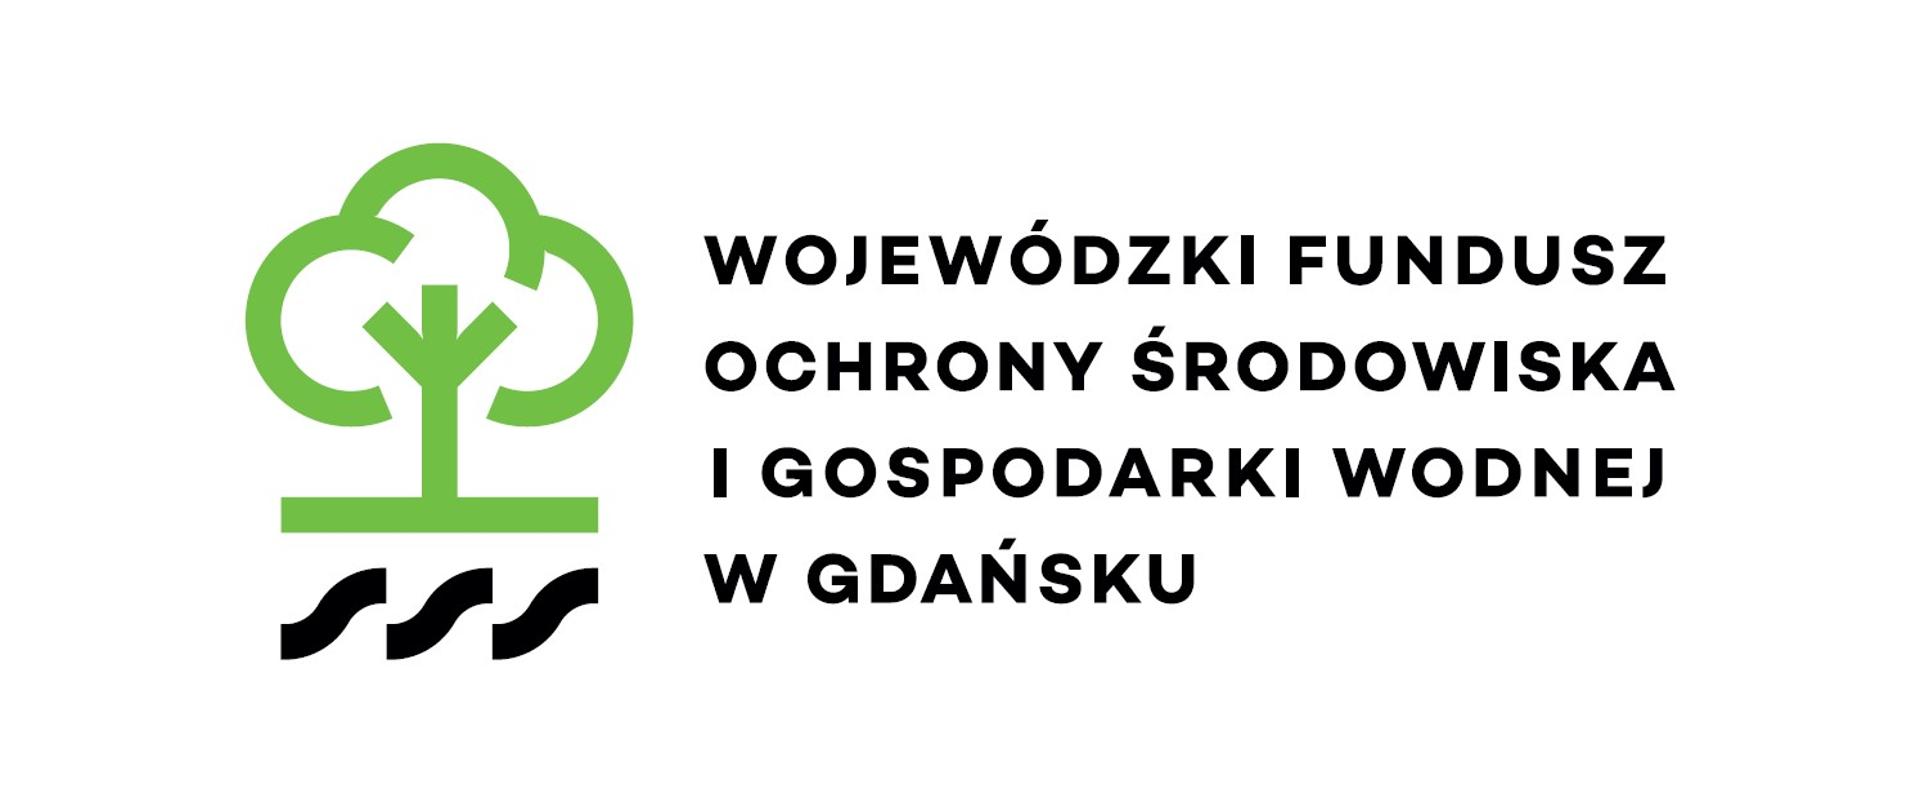 Logo - Wojewódzki Fundusz Ochrony Środowiska i Gospodarki Wodnej w Gdańsku